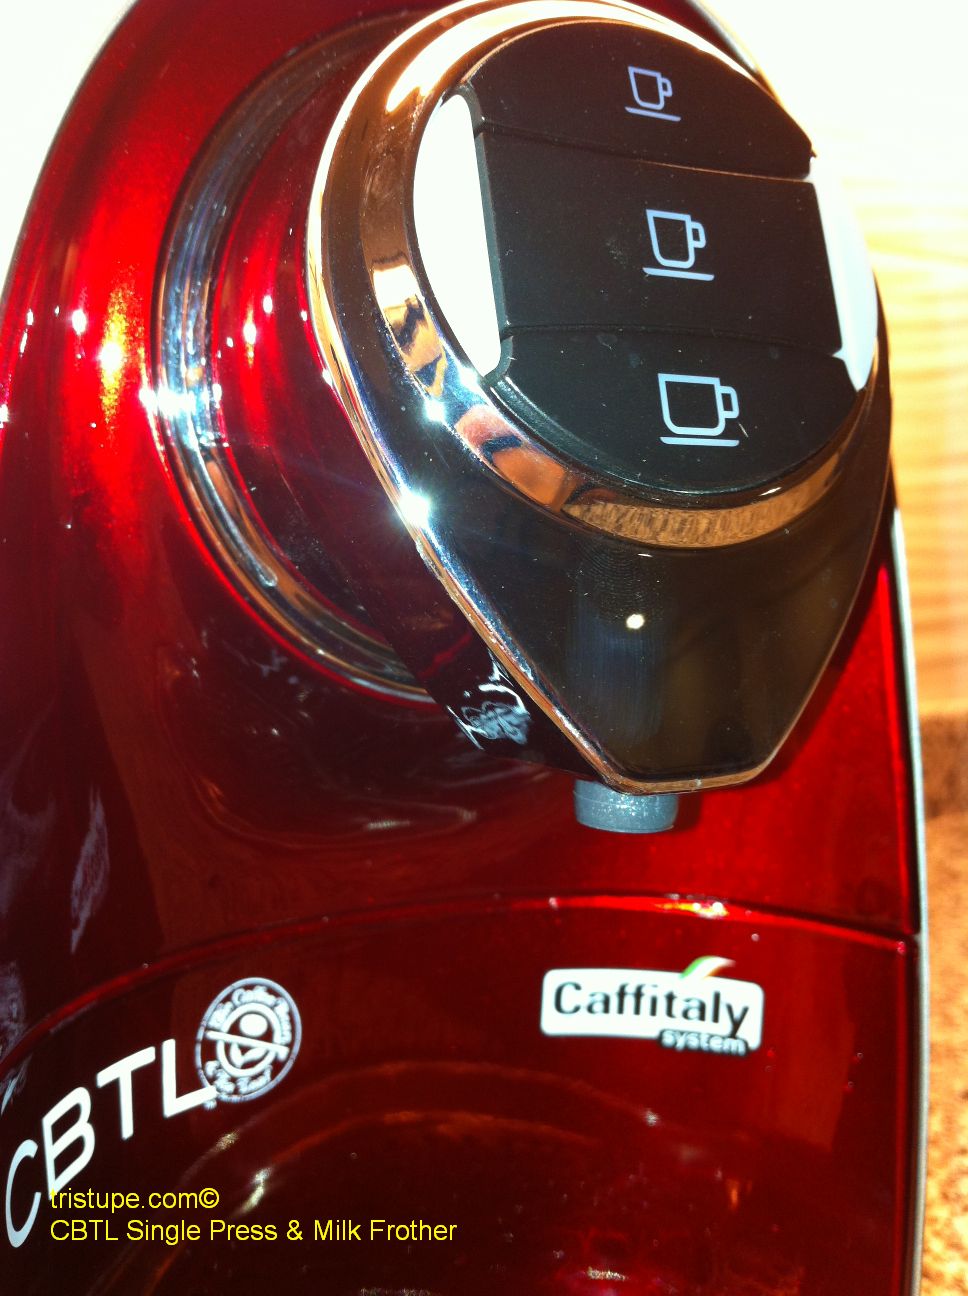 CBTL Single Press Coffee Machine Review ~ TRISTUPE.COM